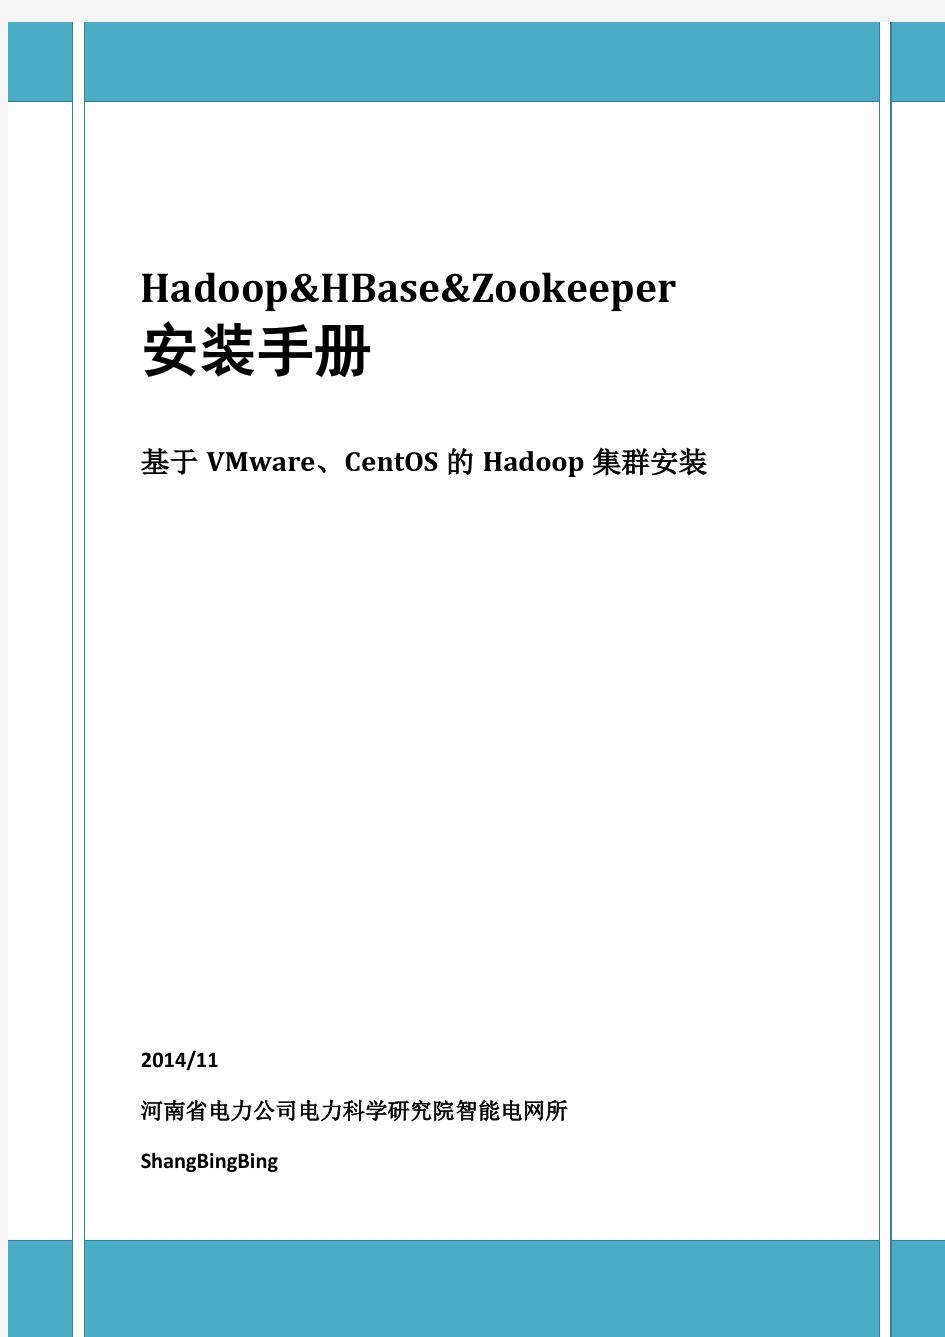 VMware10+CentOS6.5+Hadoop2.2+Zookeeper3.4.6+HBase0.96安装过程详解